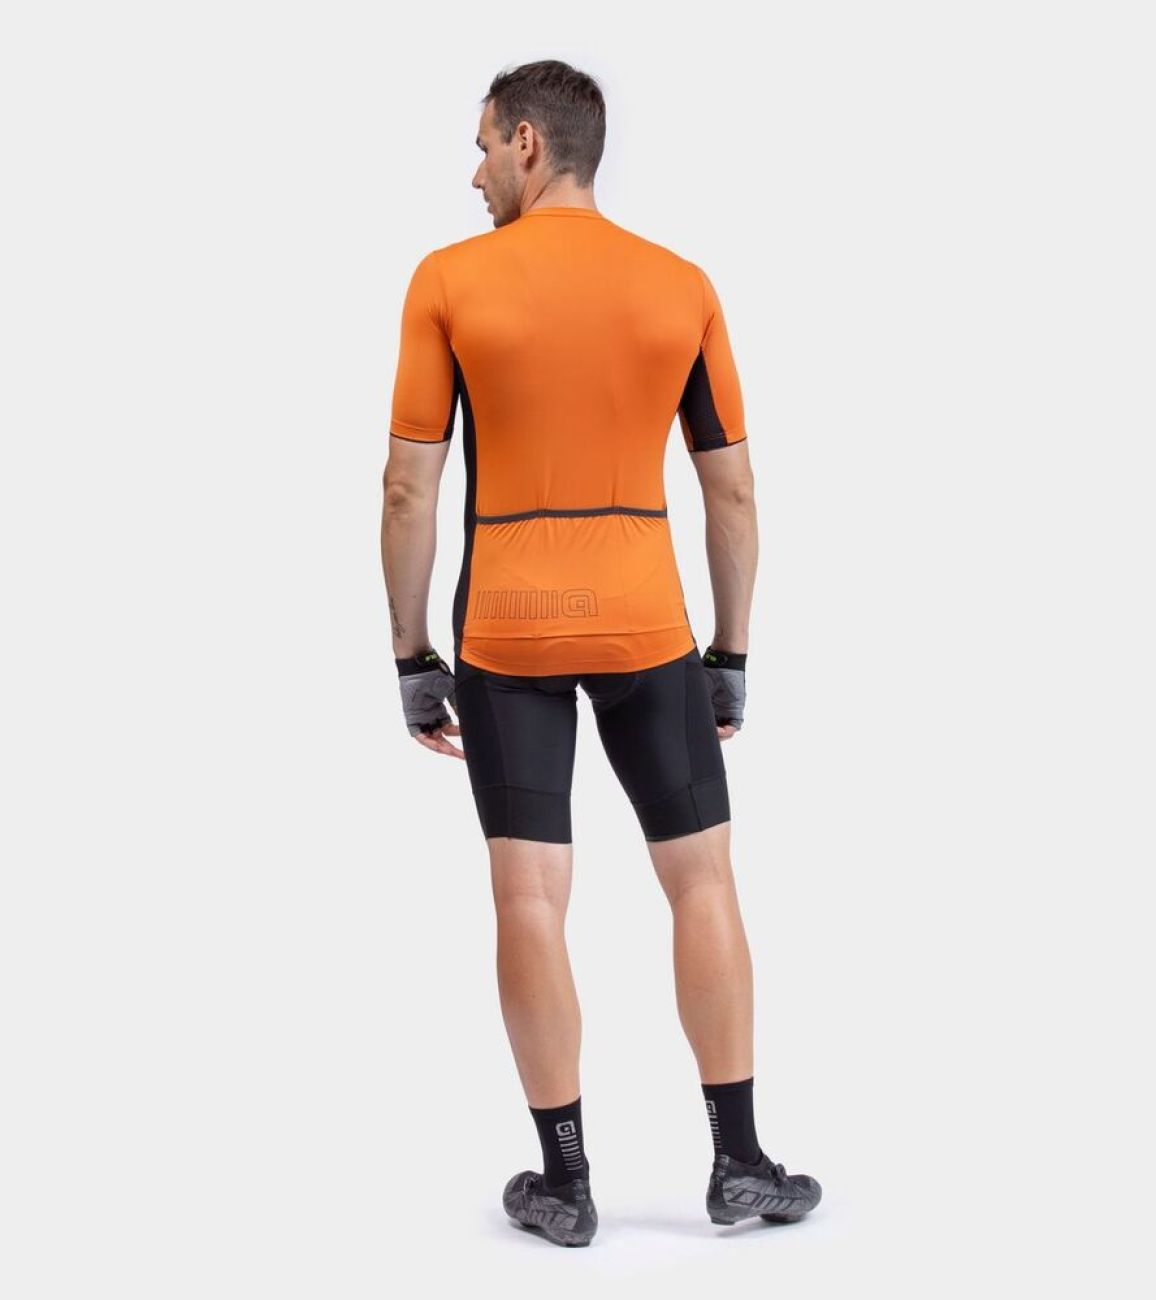 ALÉ Rövid Ujjú Kerékpáros Mez - SOLID COLOR BLOCK - Narancssárga